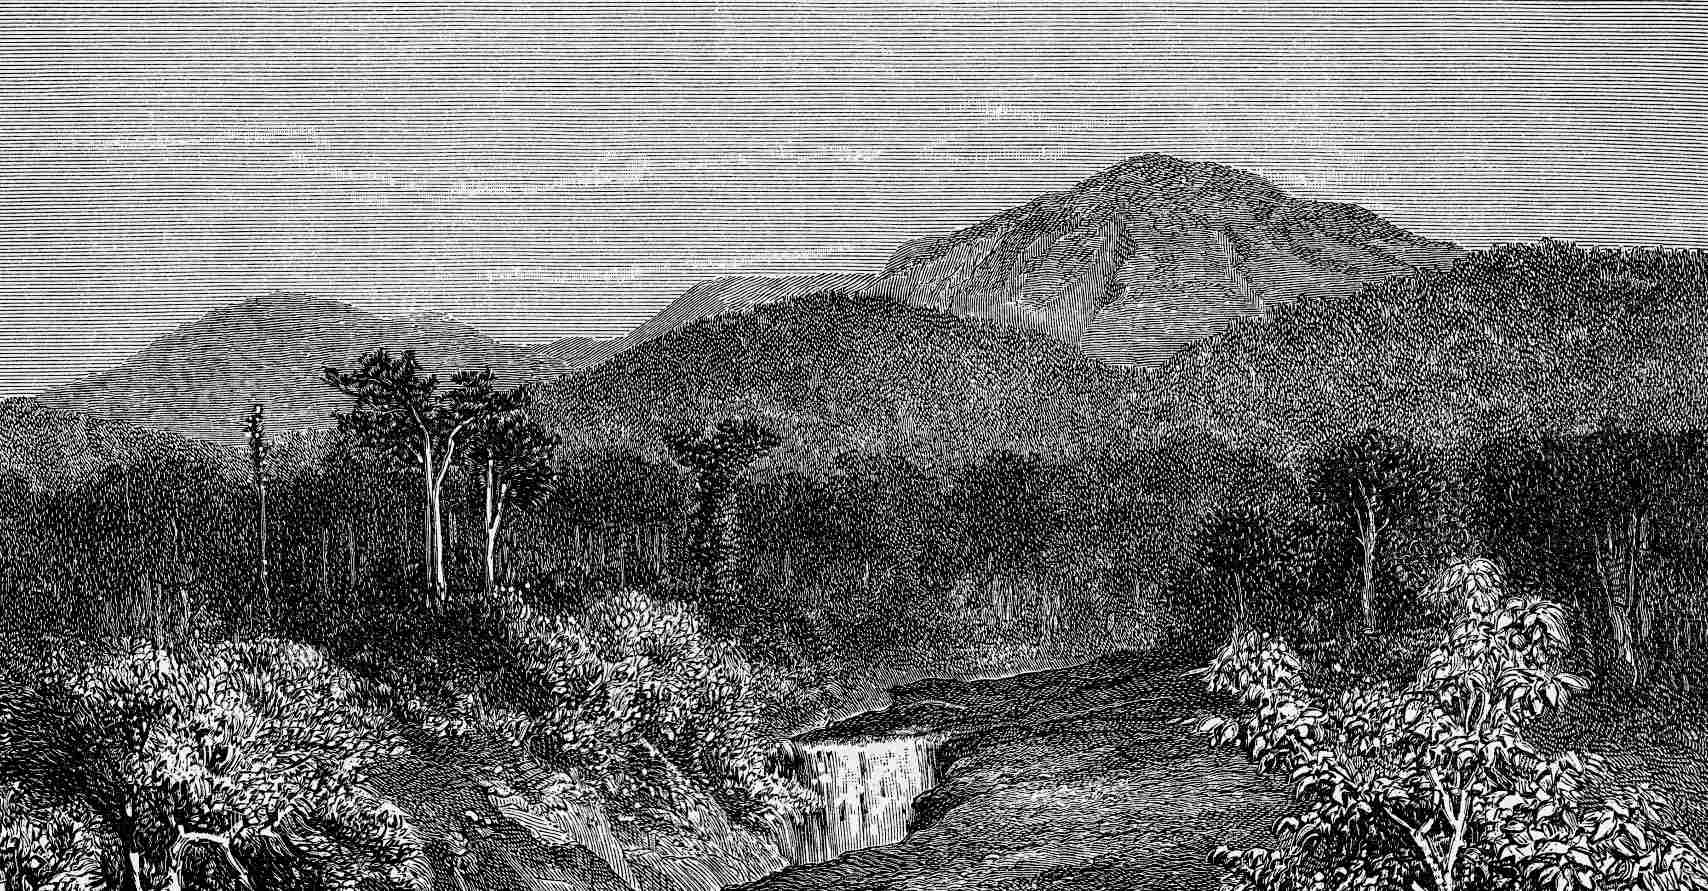 L'explorateur britannique Alfred Isaac Middleton a-t-il découvert une mystérieuse cité perdue ? sept